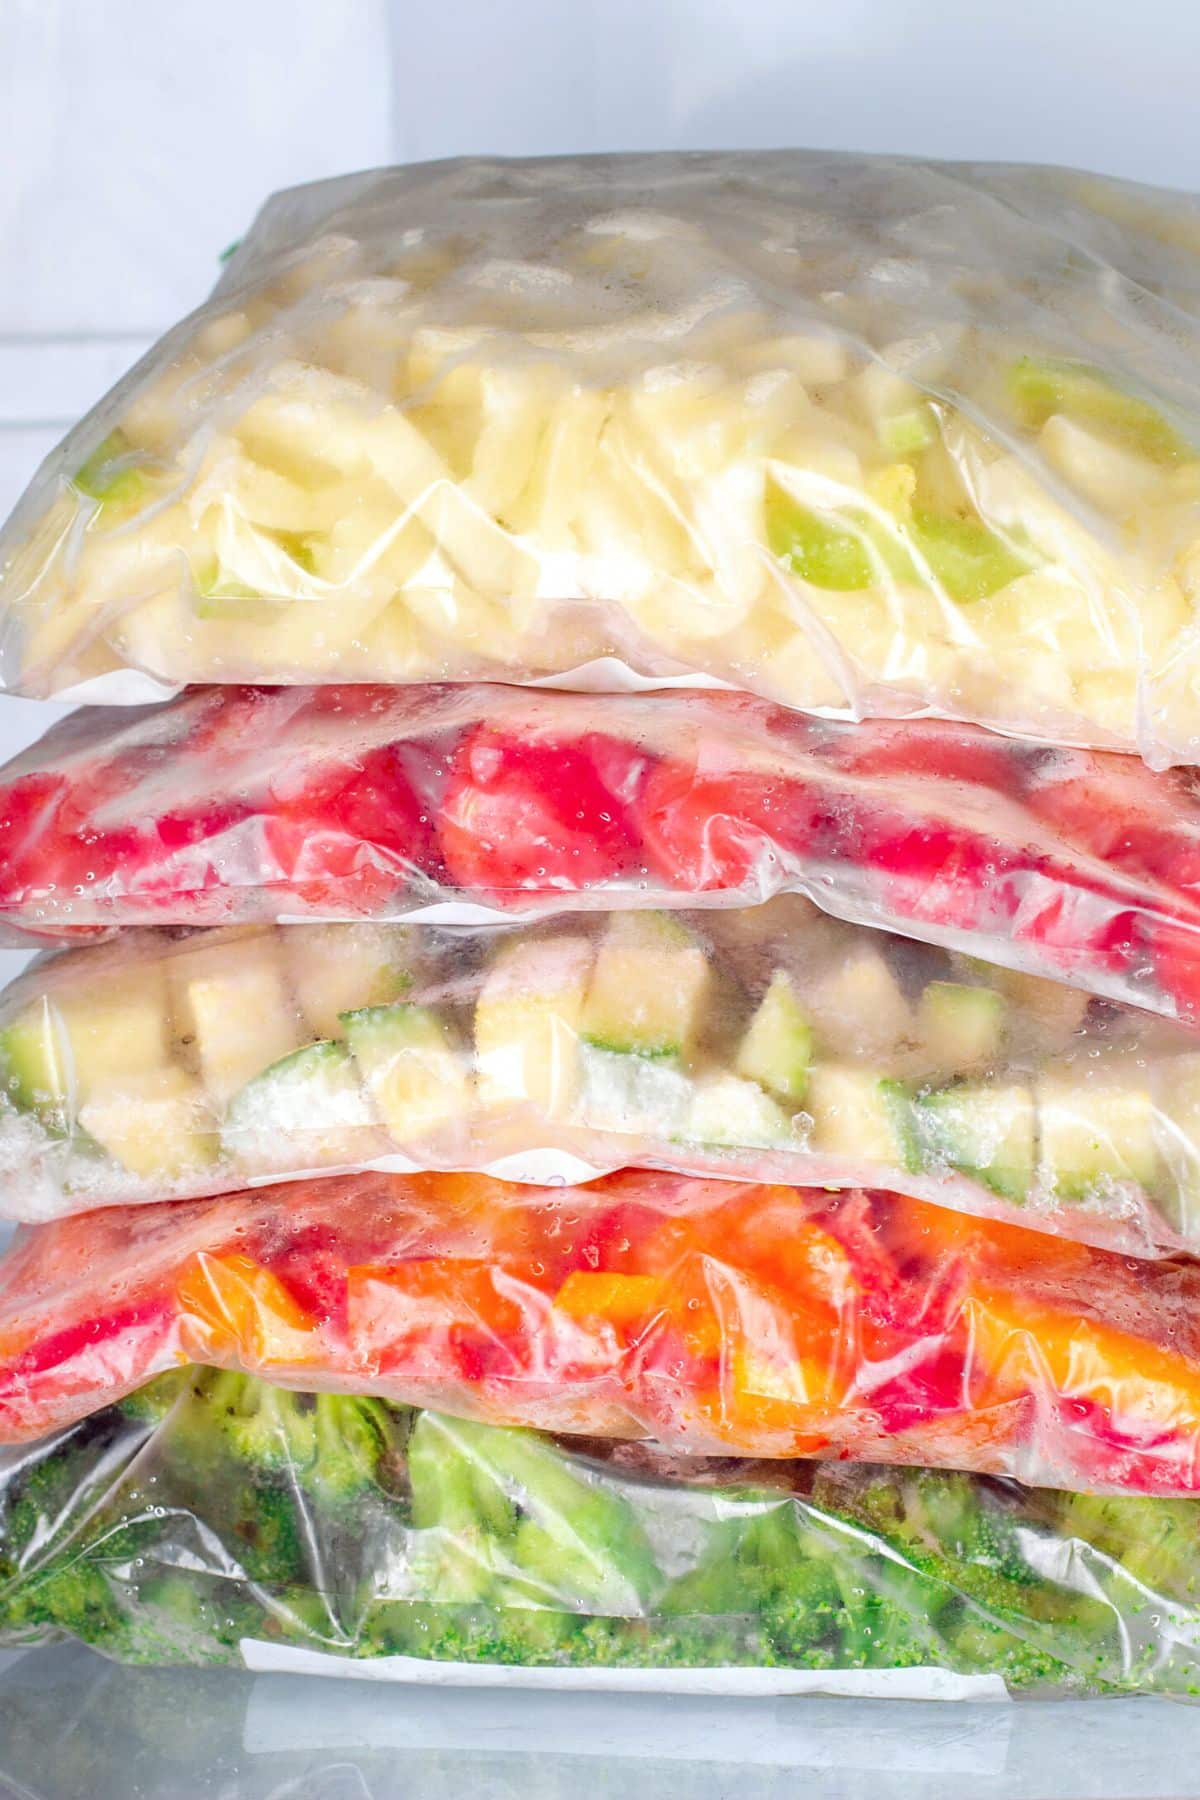 Plastic baggies of diced frozen veggies stacked in the freezer.